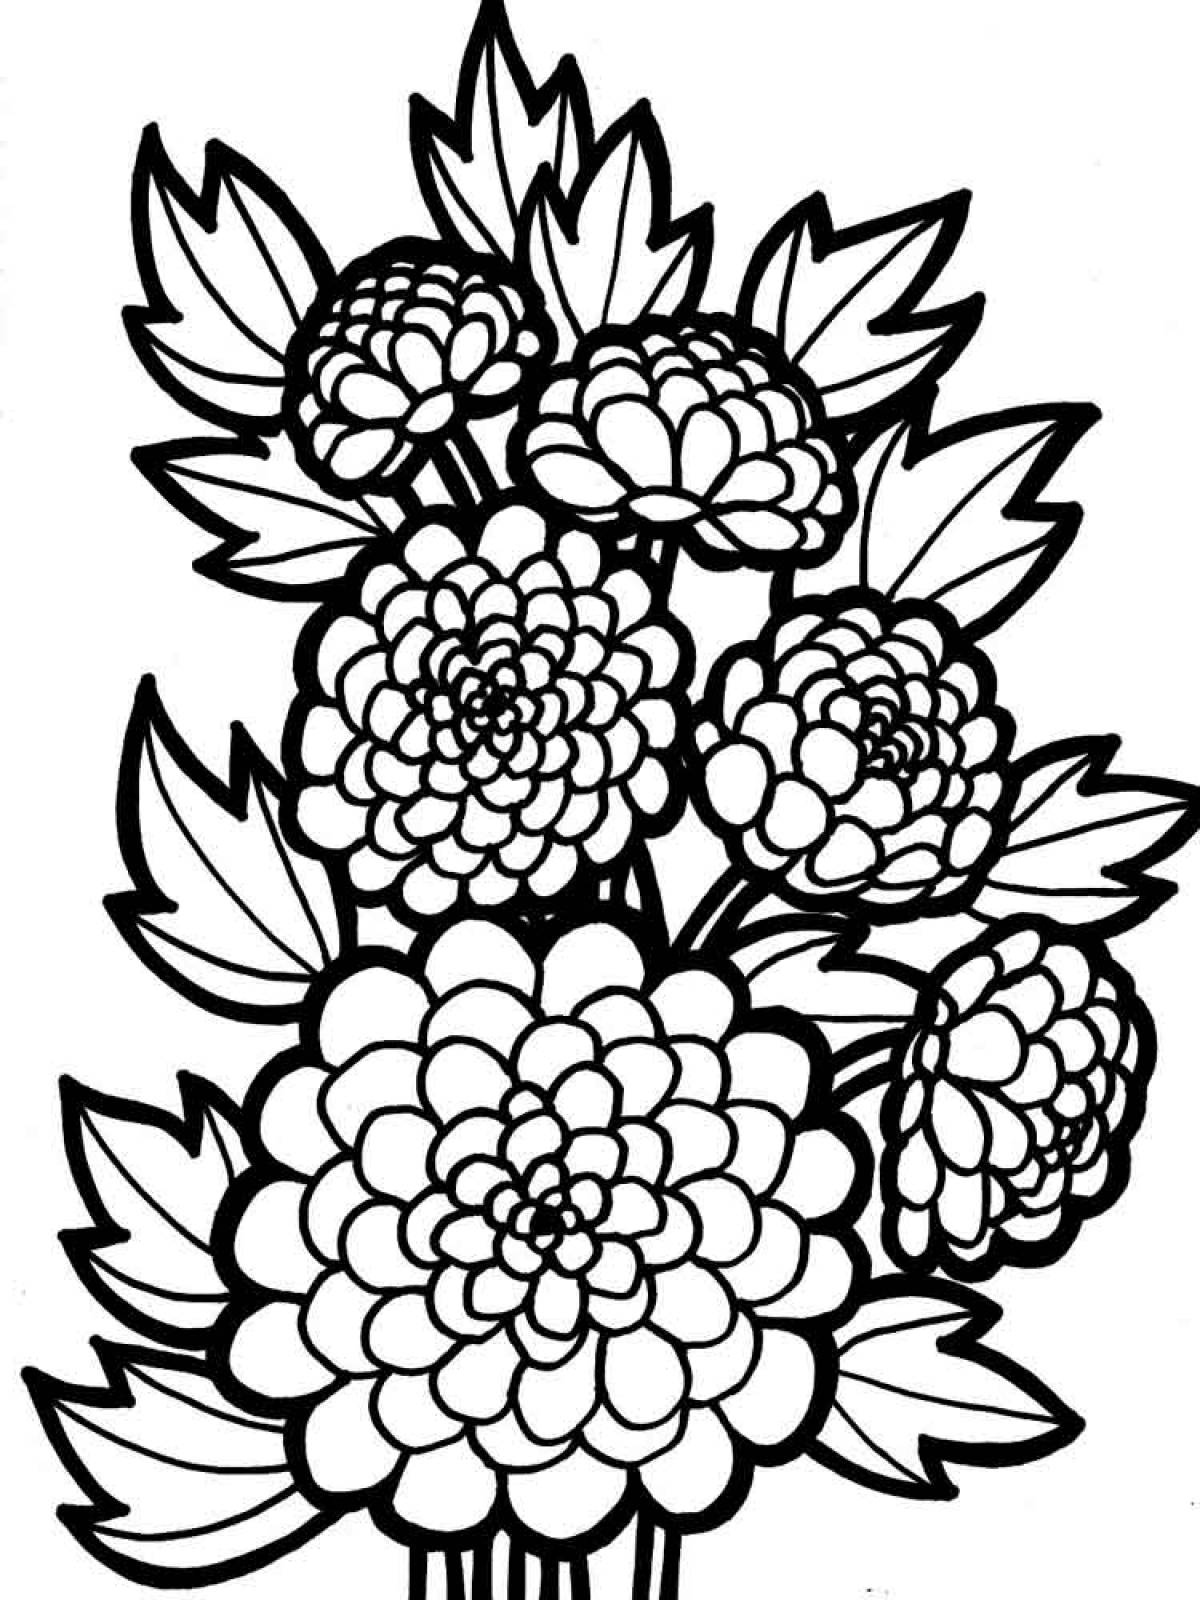 Chrysanthemum drawing